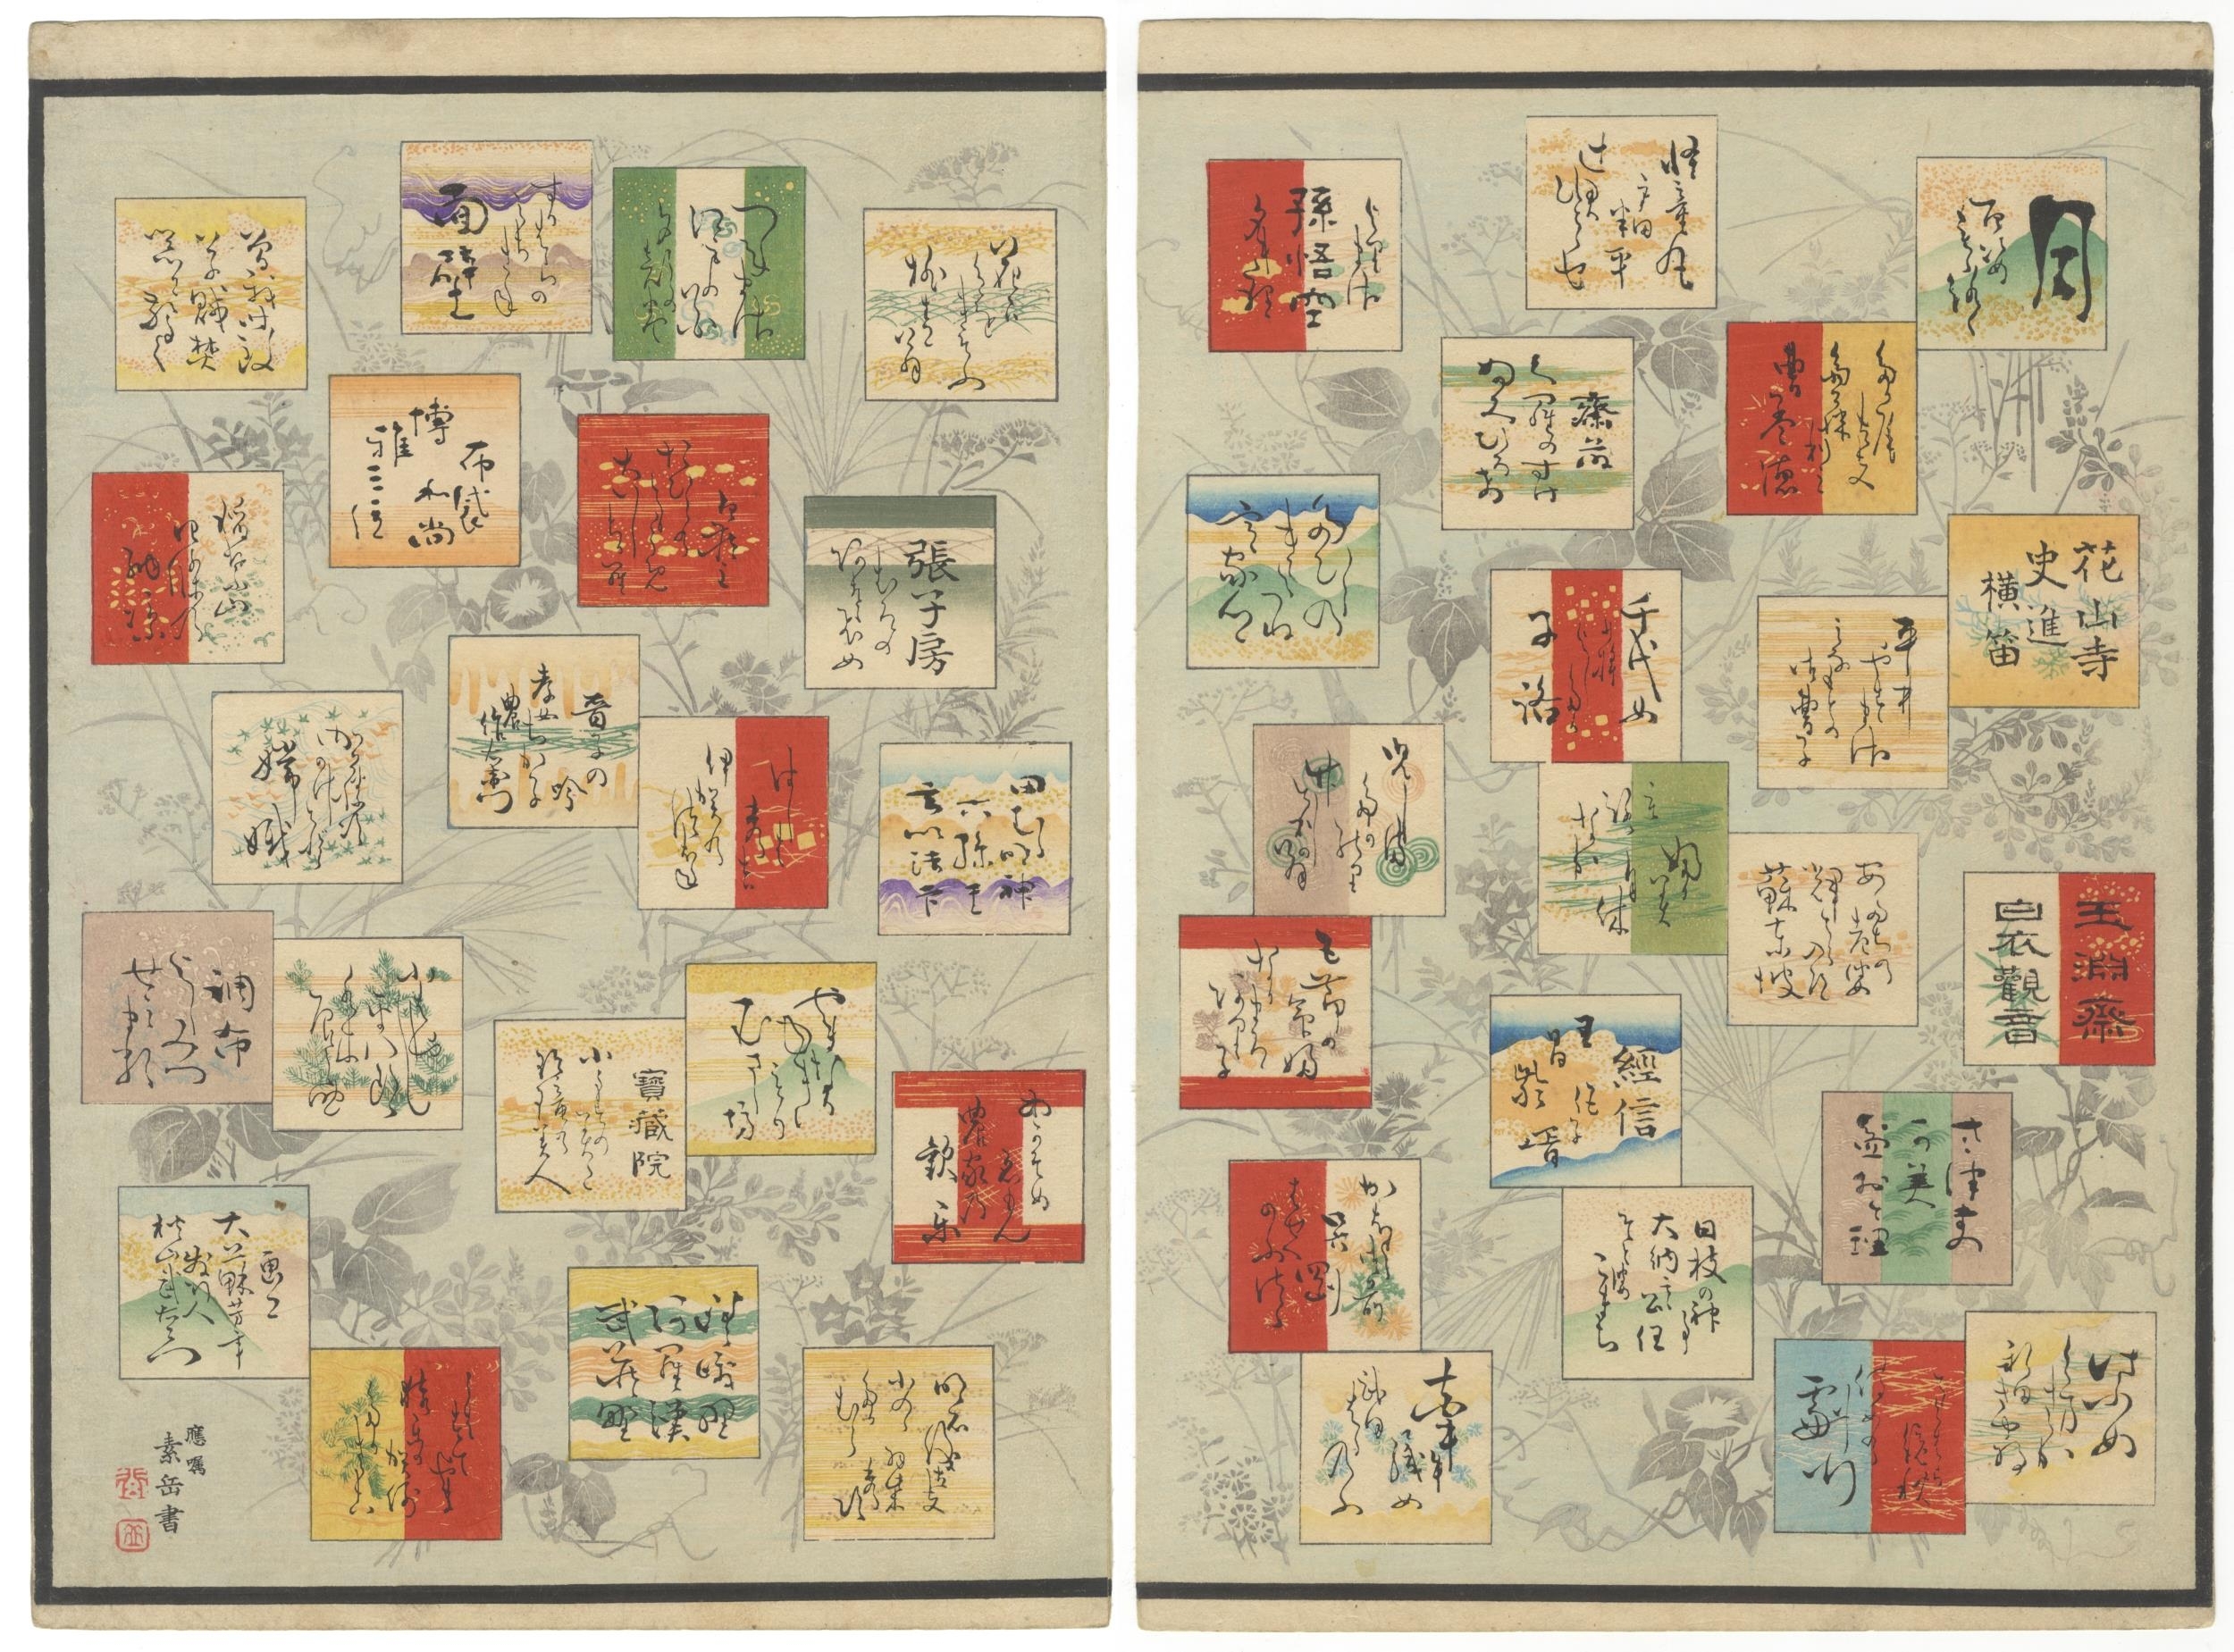 Index Pages by Tsukioka Yoshitoshi, 1885-1892